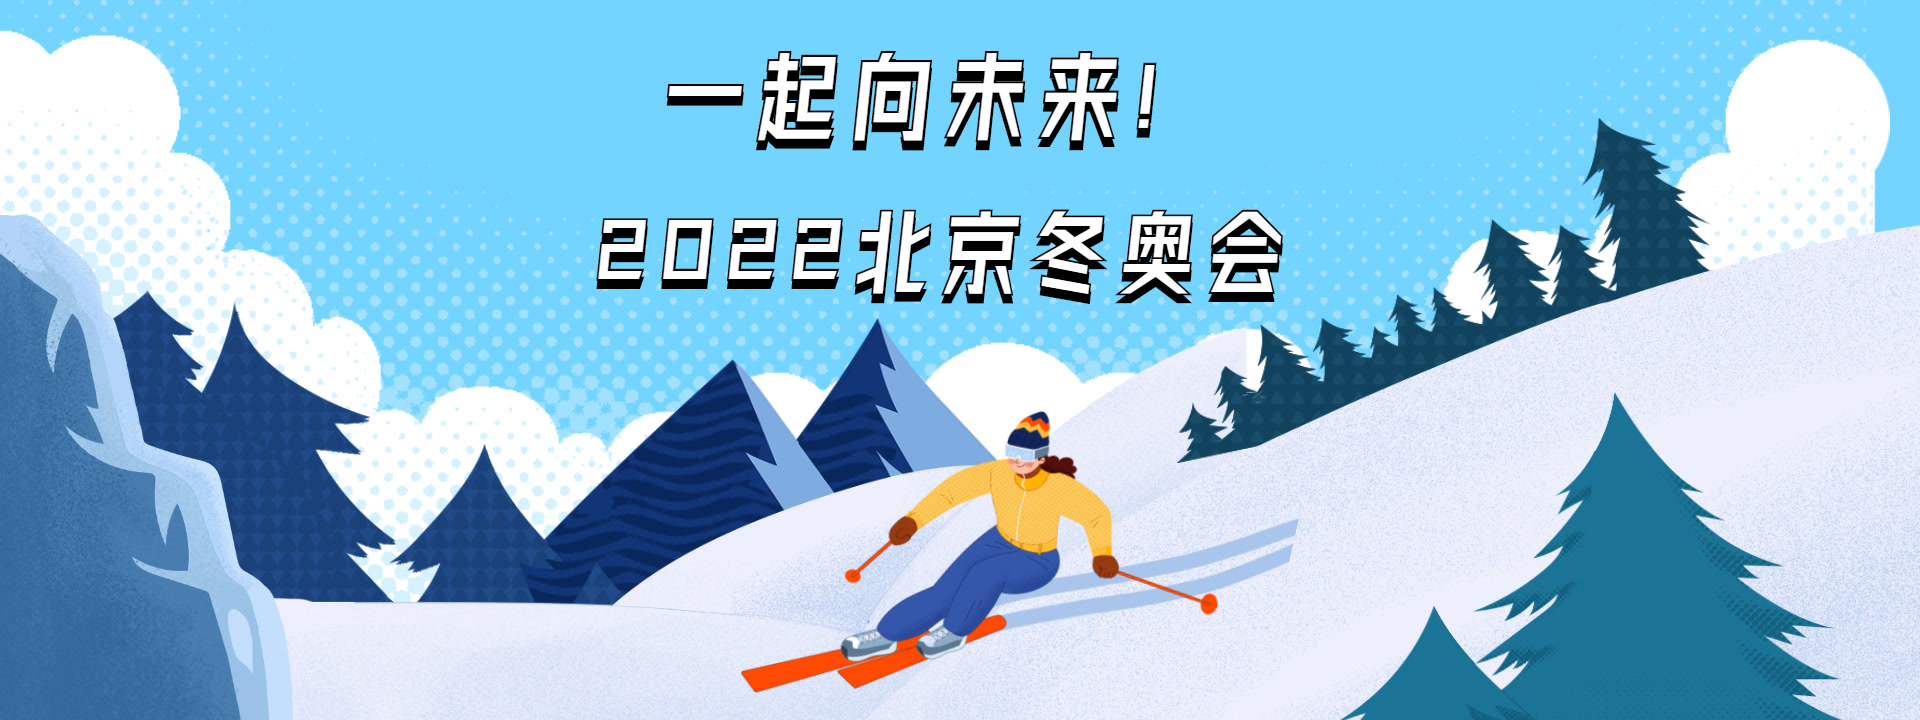 迎接北京冬奥会 共赴冰雪之约